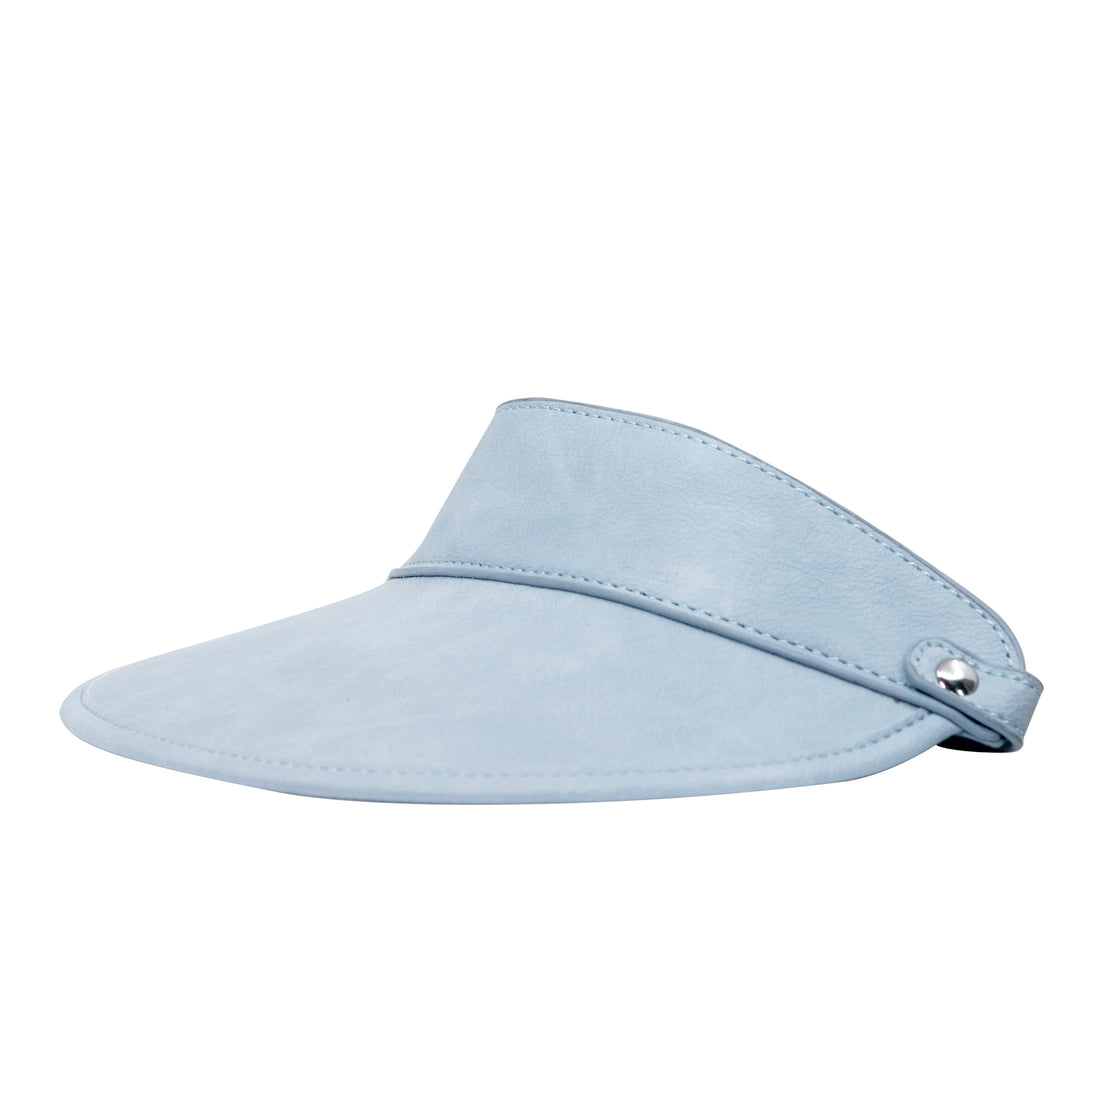 Amsterdam Blue - vegan leather visor